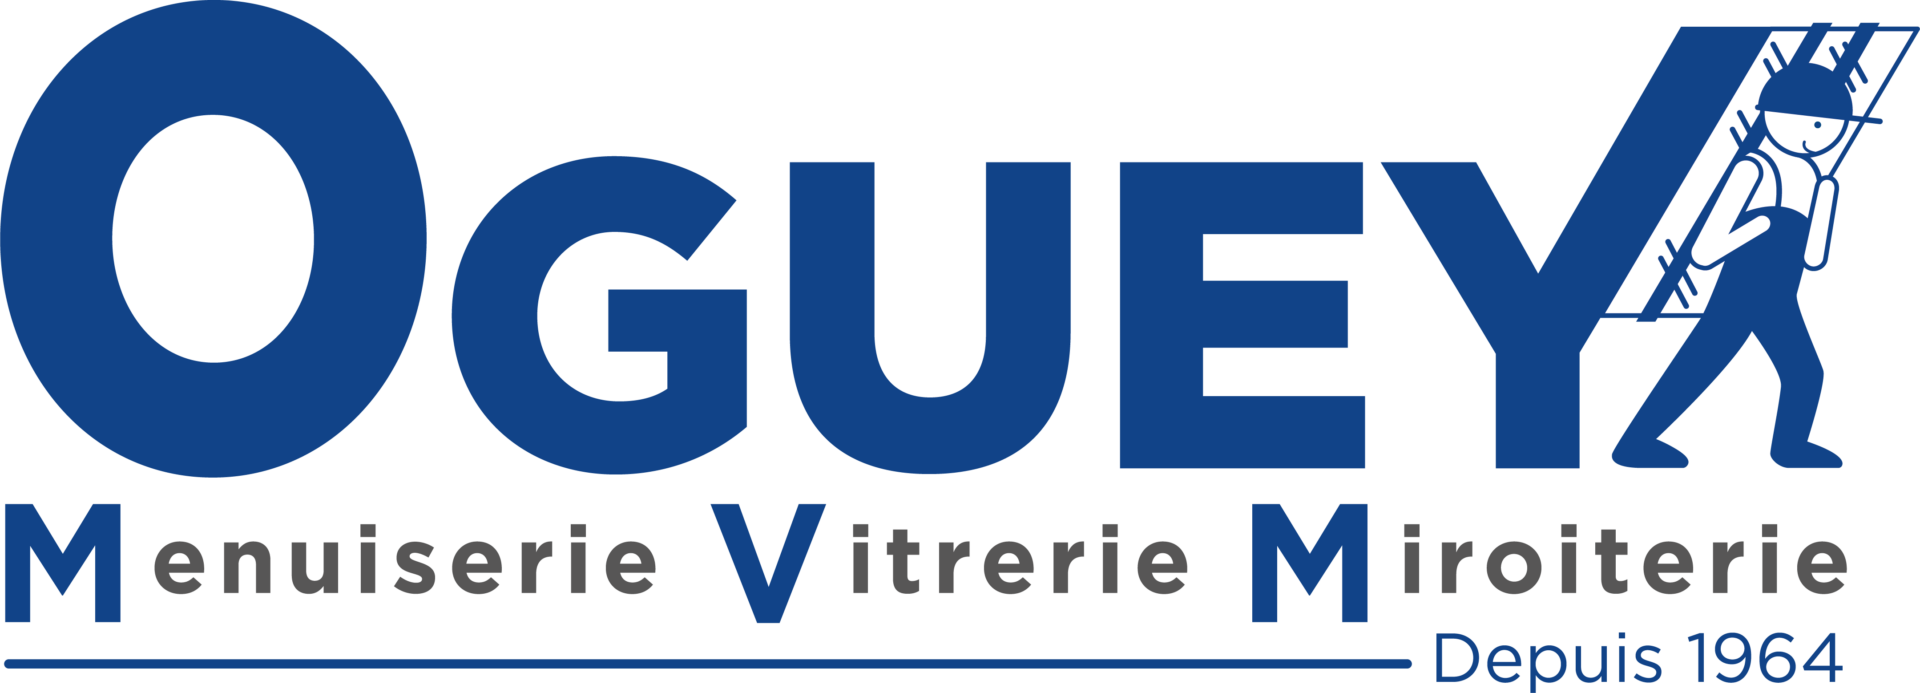 Logo transparent - Oguey M.V.M